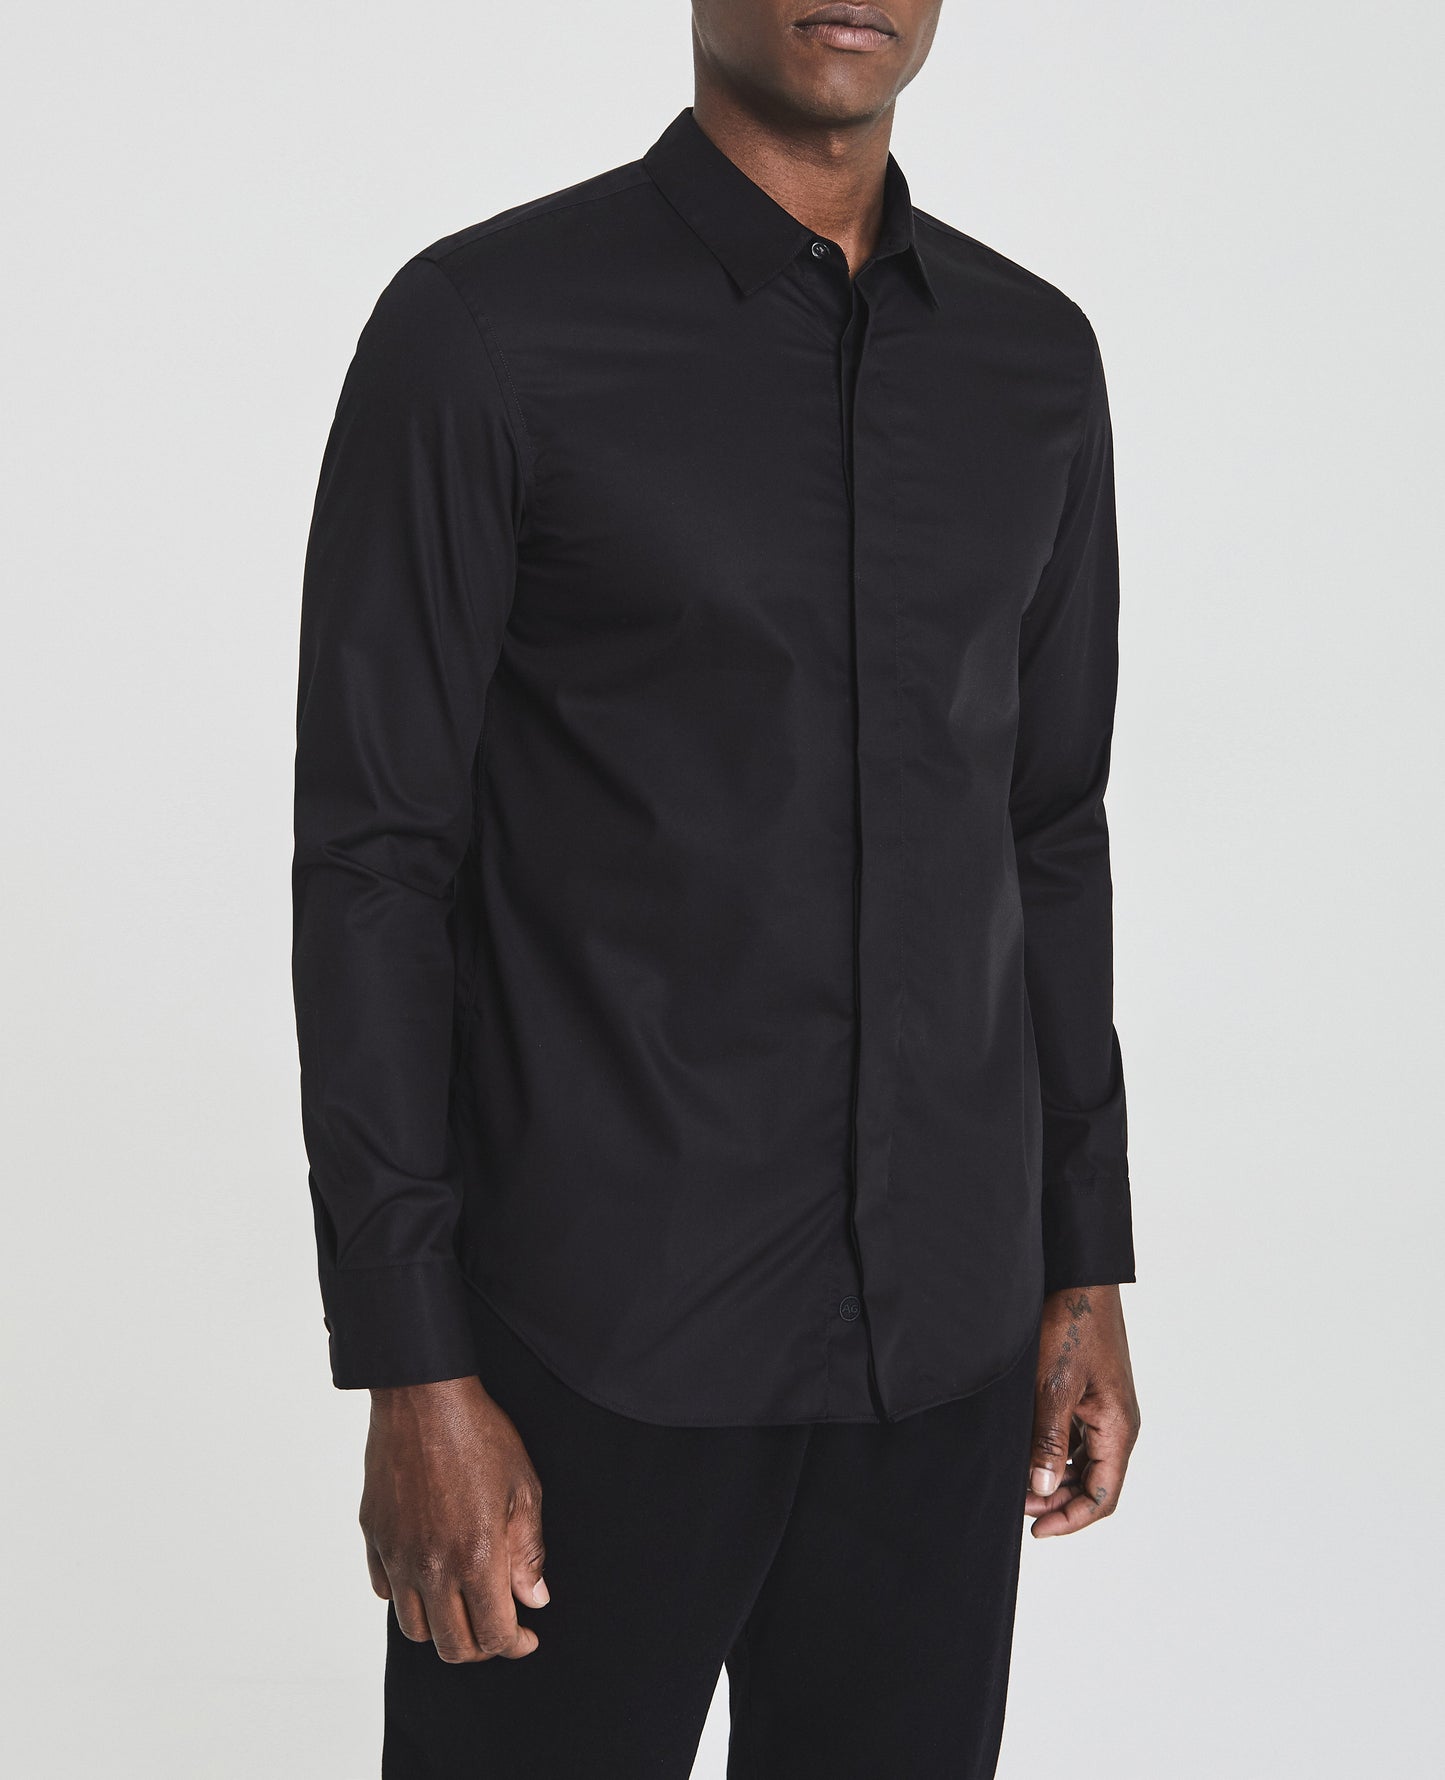 Ace Dress Shirt True Black Long Sleeve Shirt Men Tops Photo 4